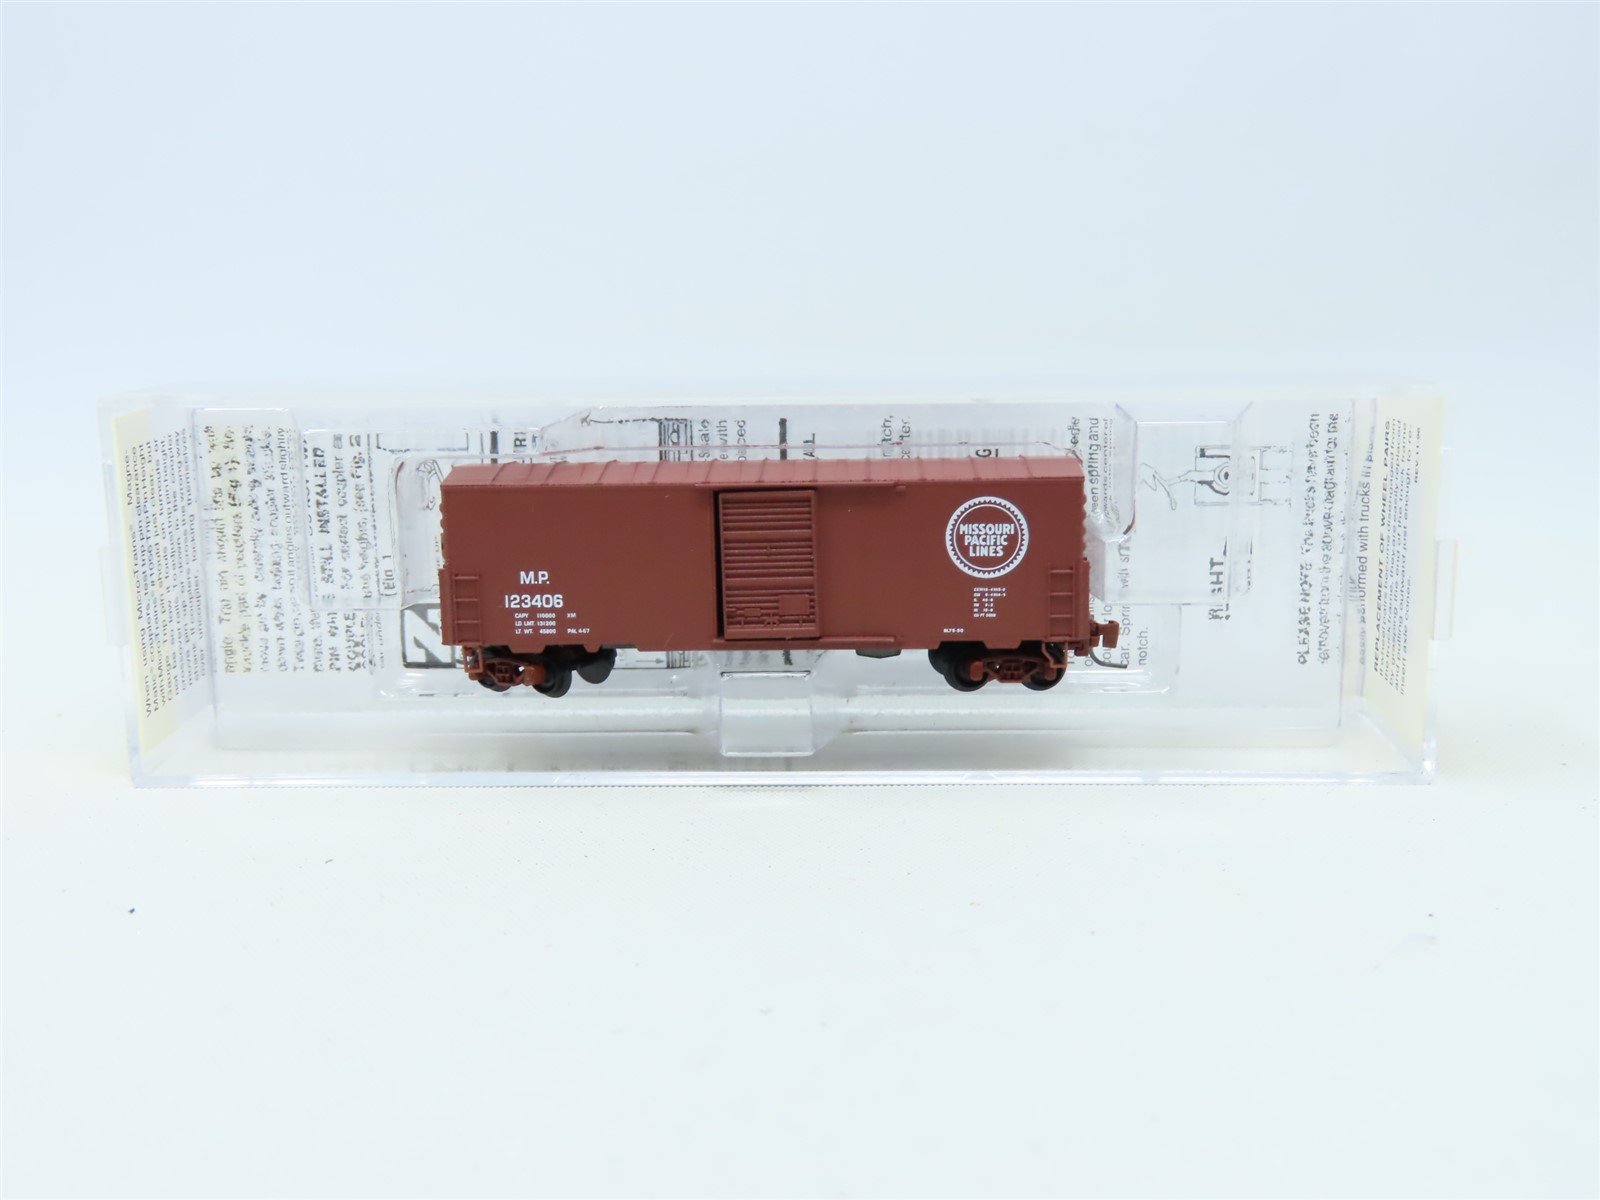 Z Micro-Trains MTL 503 00 032 MP Missouri Pacific 40' Box Car #123406